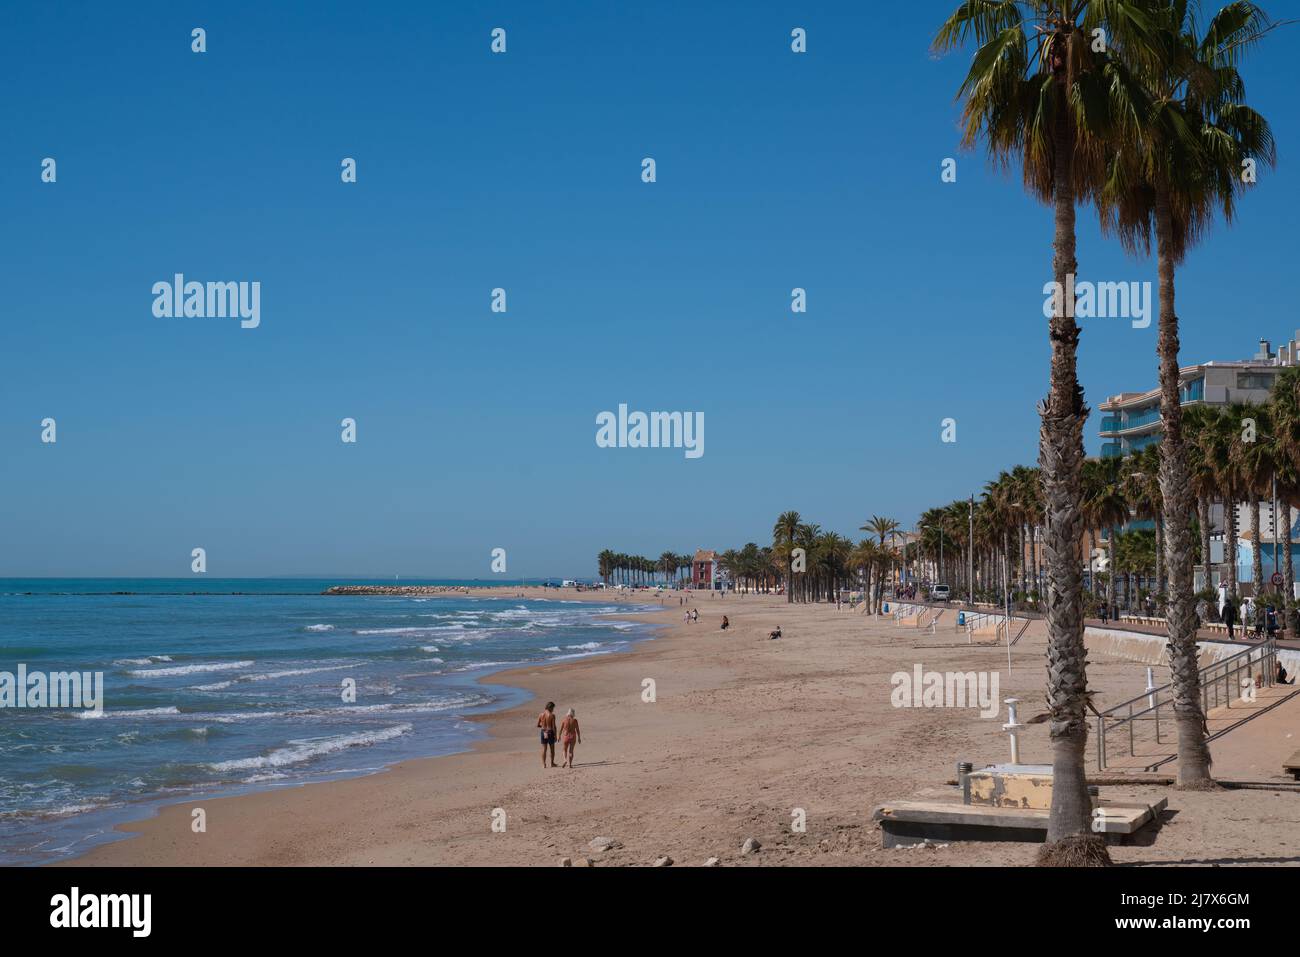 Villajoyosa spiaggia e palme Costa Blanca Alicante Spagna mare blu e cielo Foto Stock